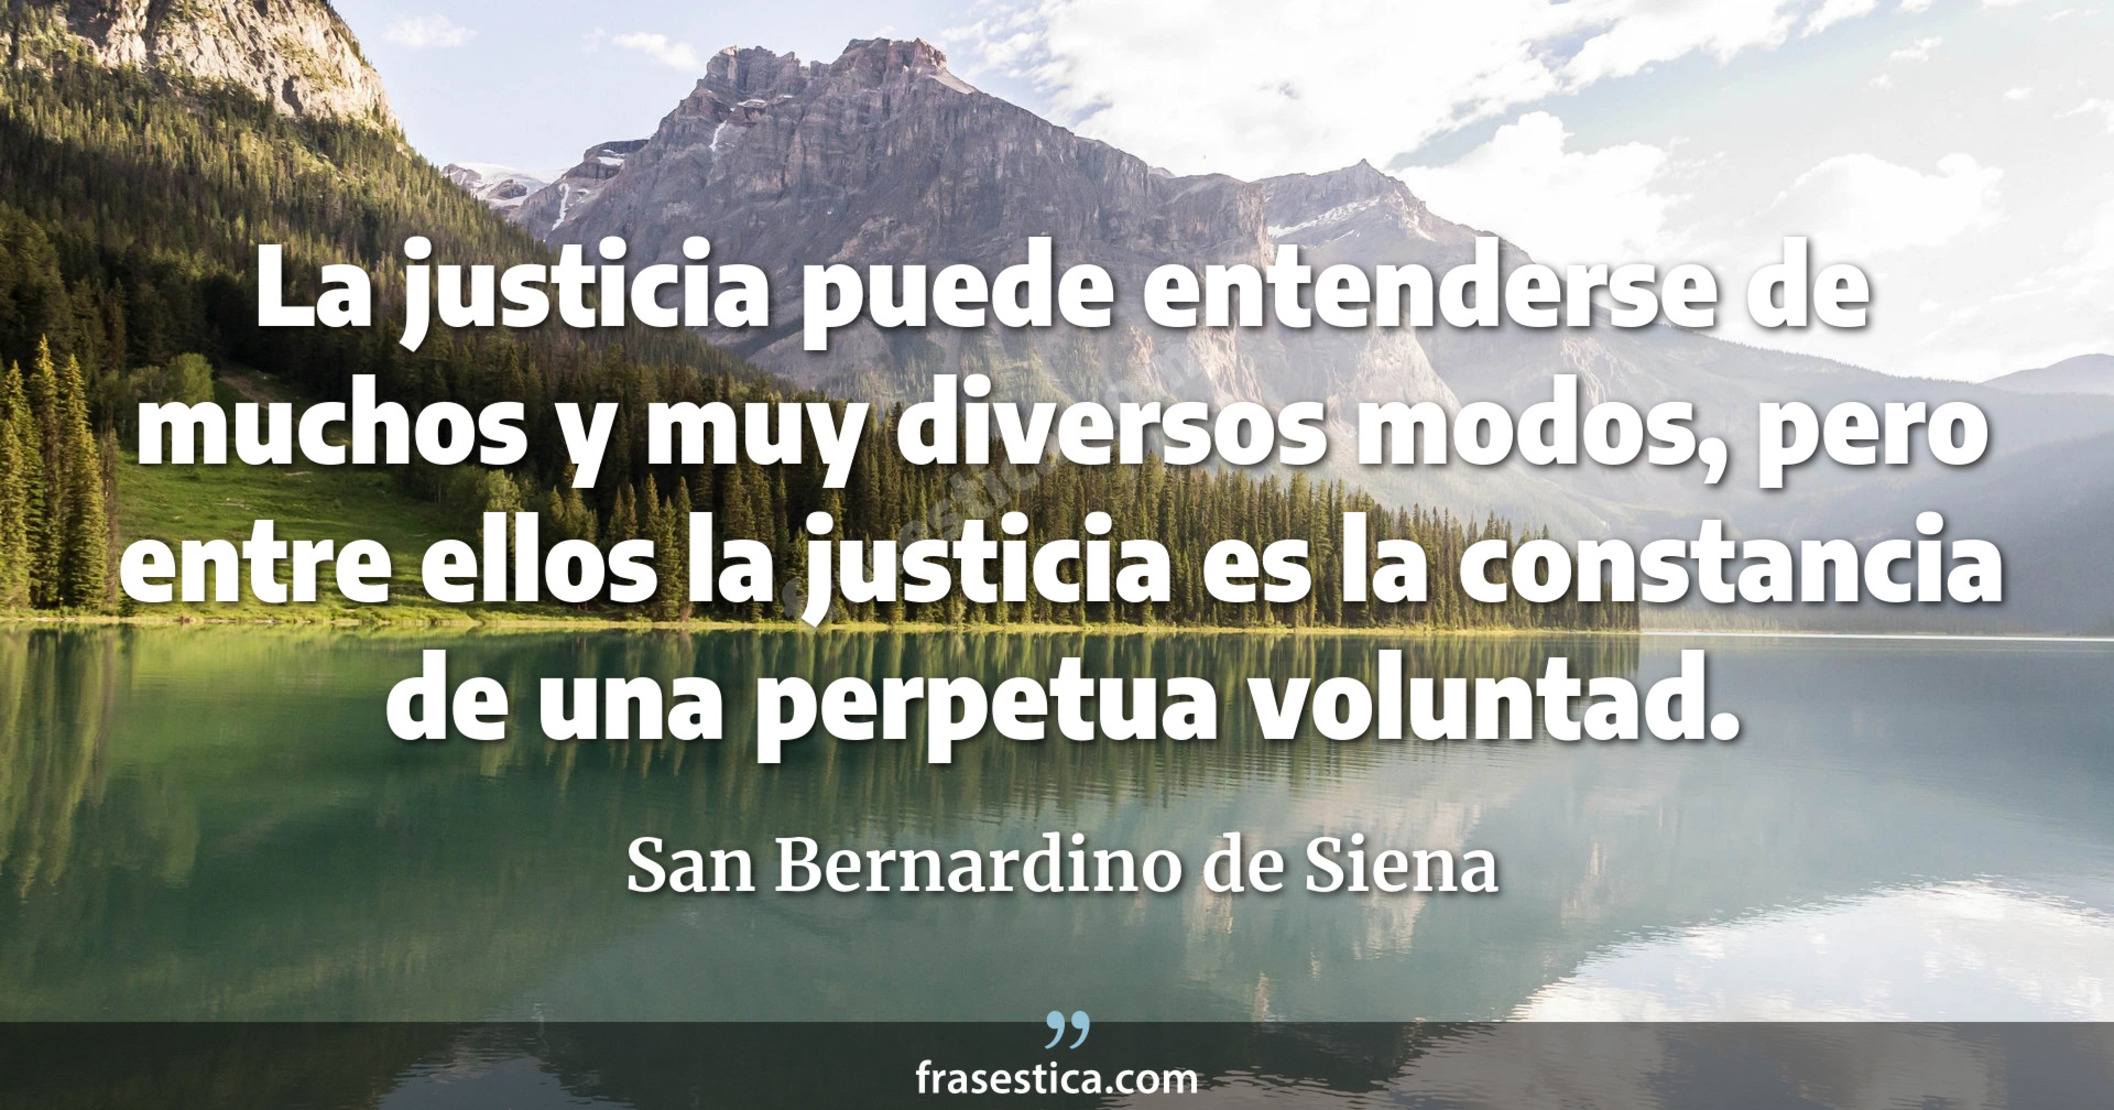 La justicia puede entenderse de muchos y muy diversos modos, pero entre ellos la justicia es la constancia de una perpetua voluntad. - San Bernardino de Siena